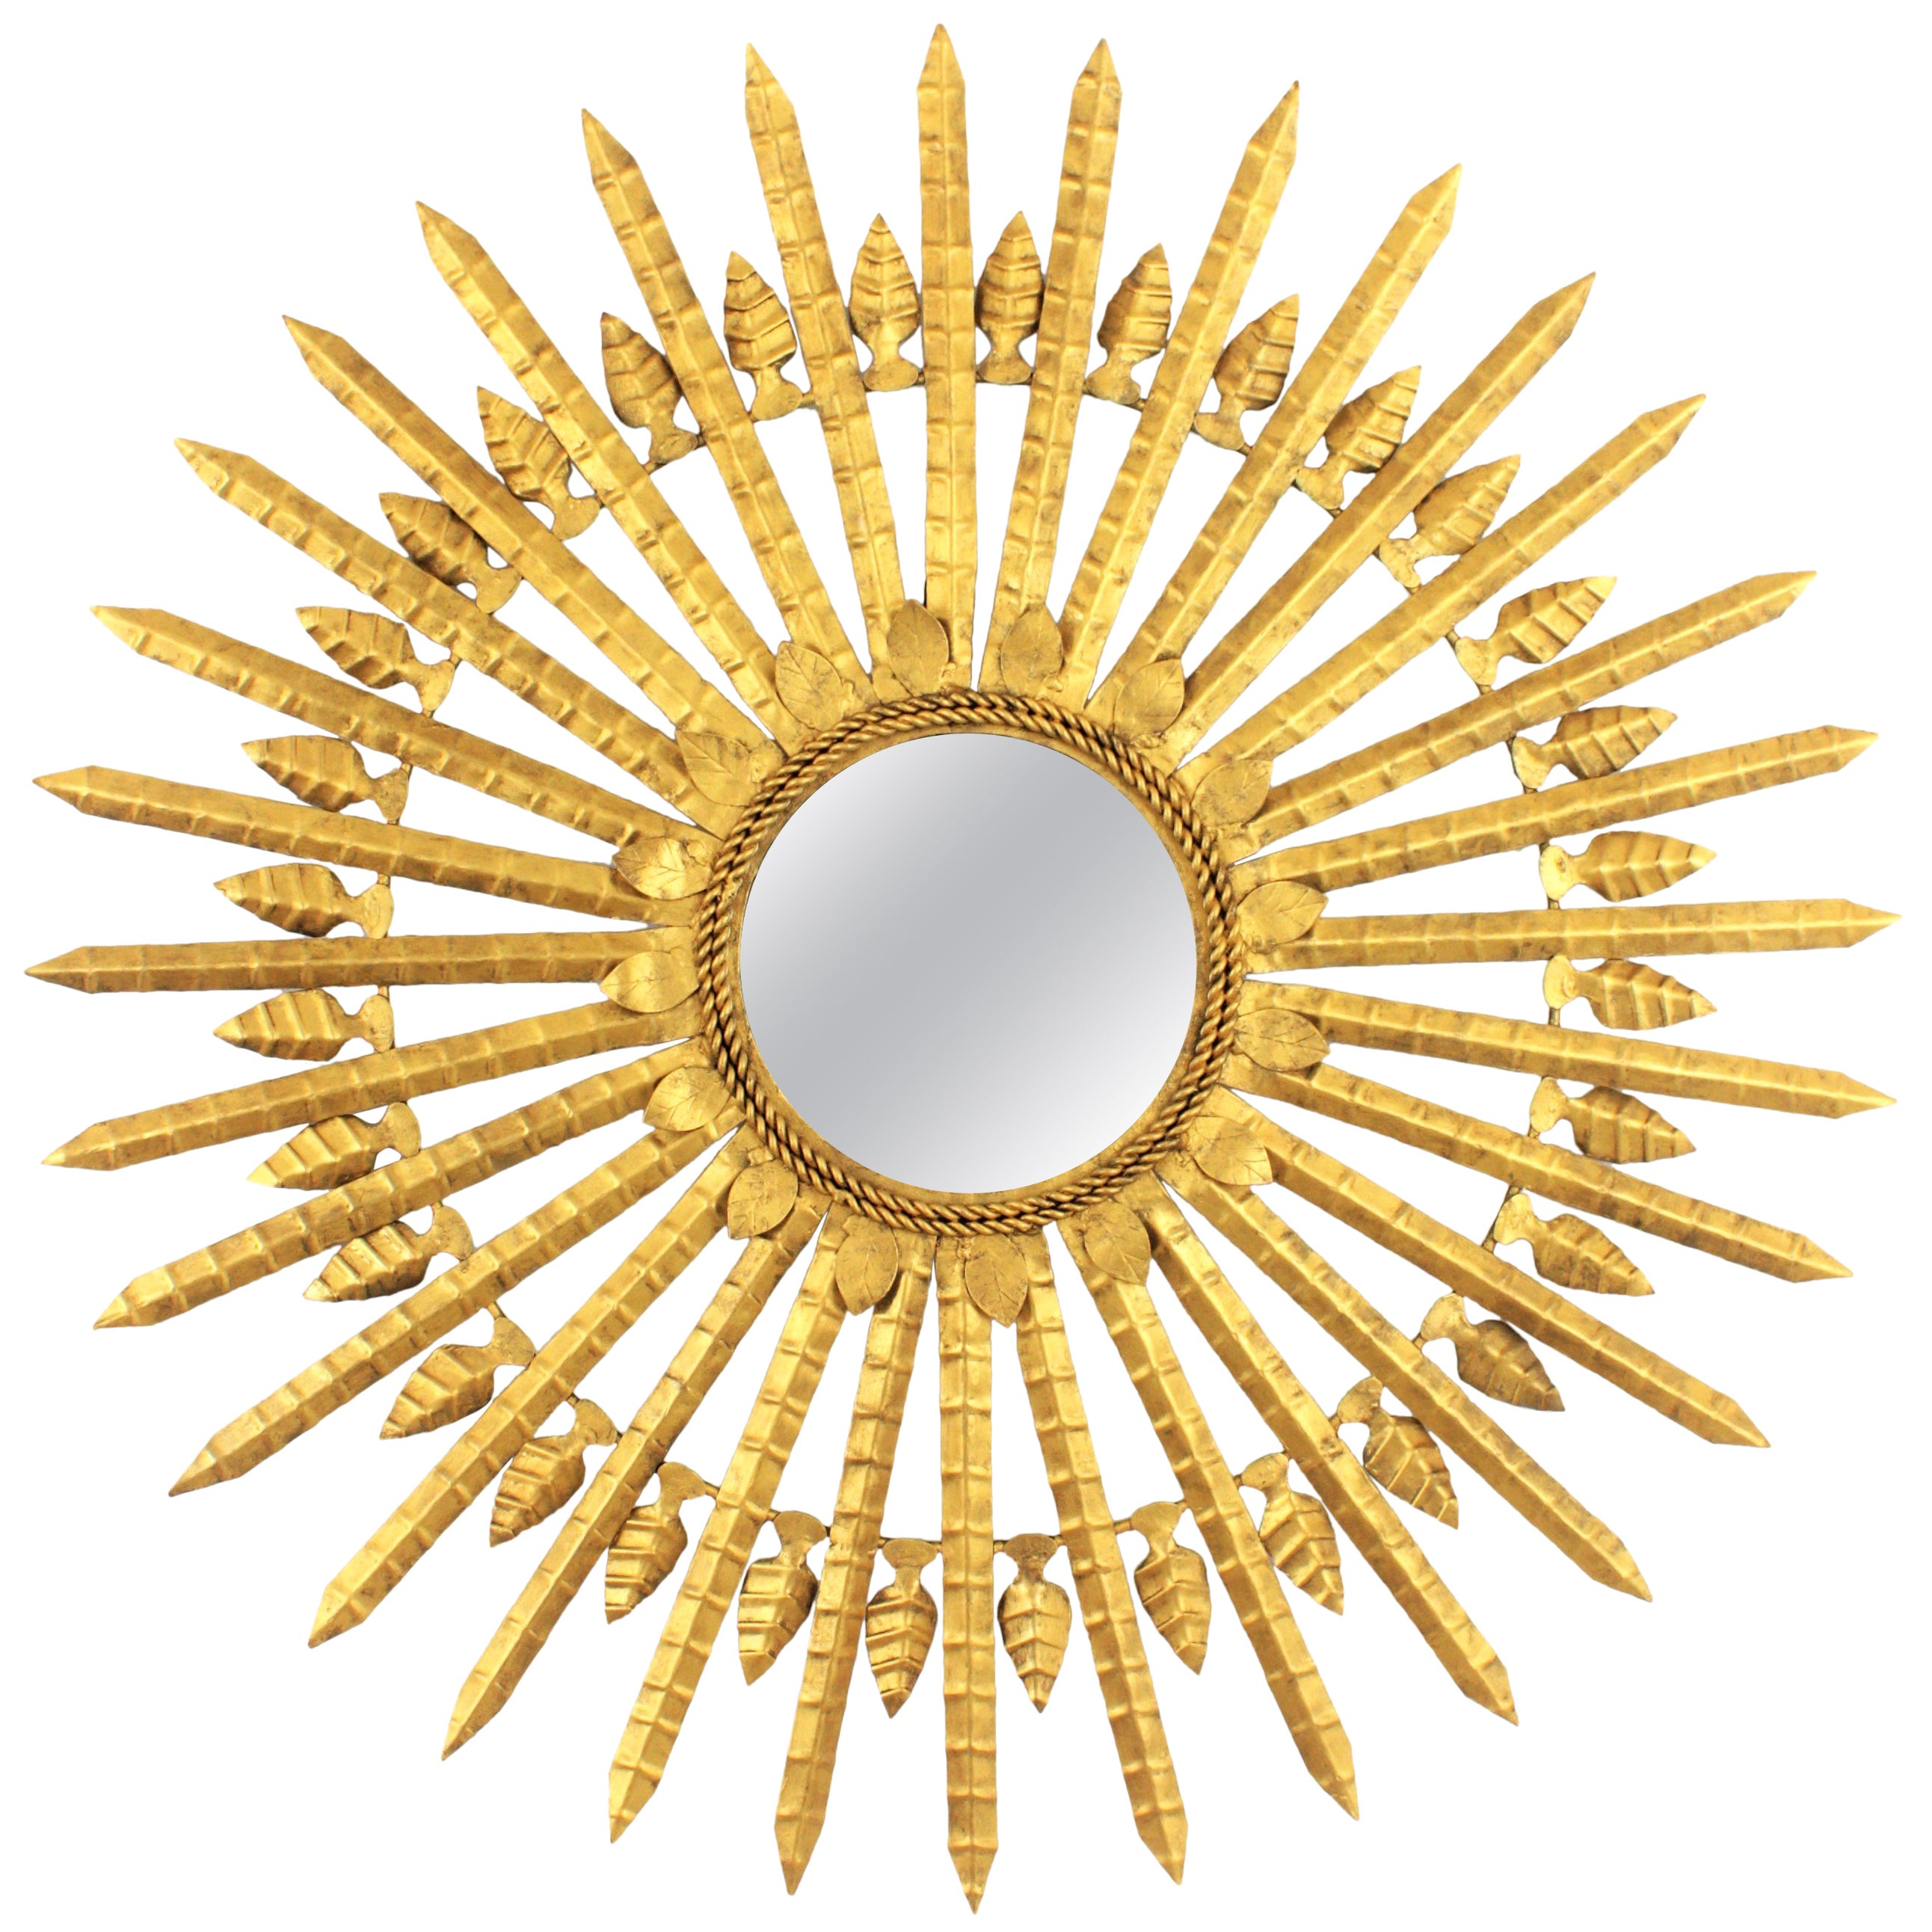 Sunburst-Spiegel aus vergoldetem Eisen, großformatig (38, 6 Zoll)